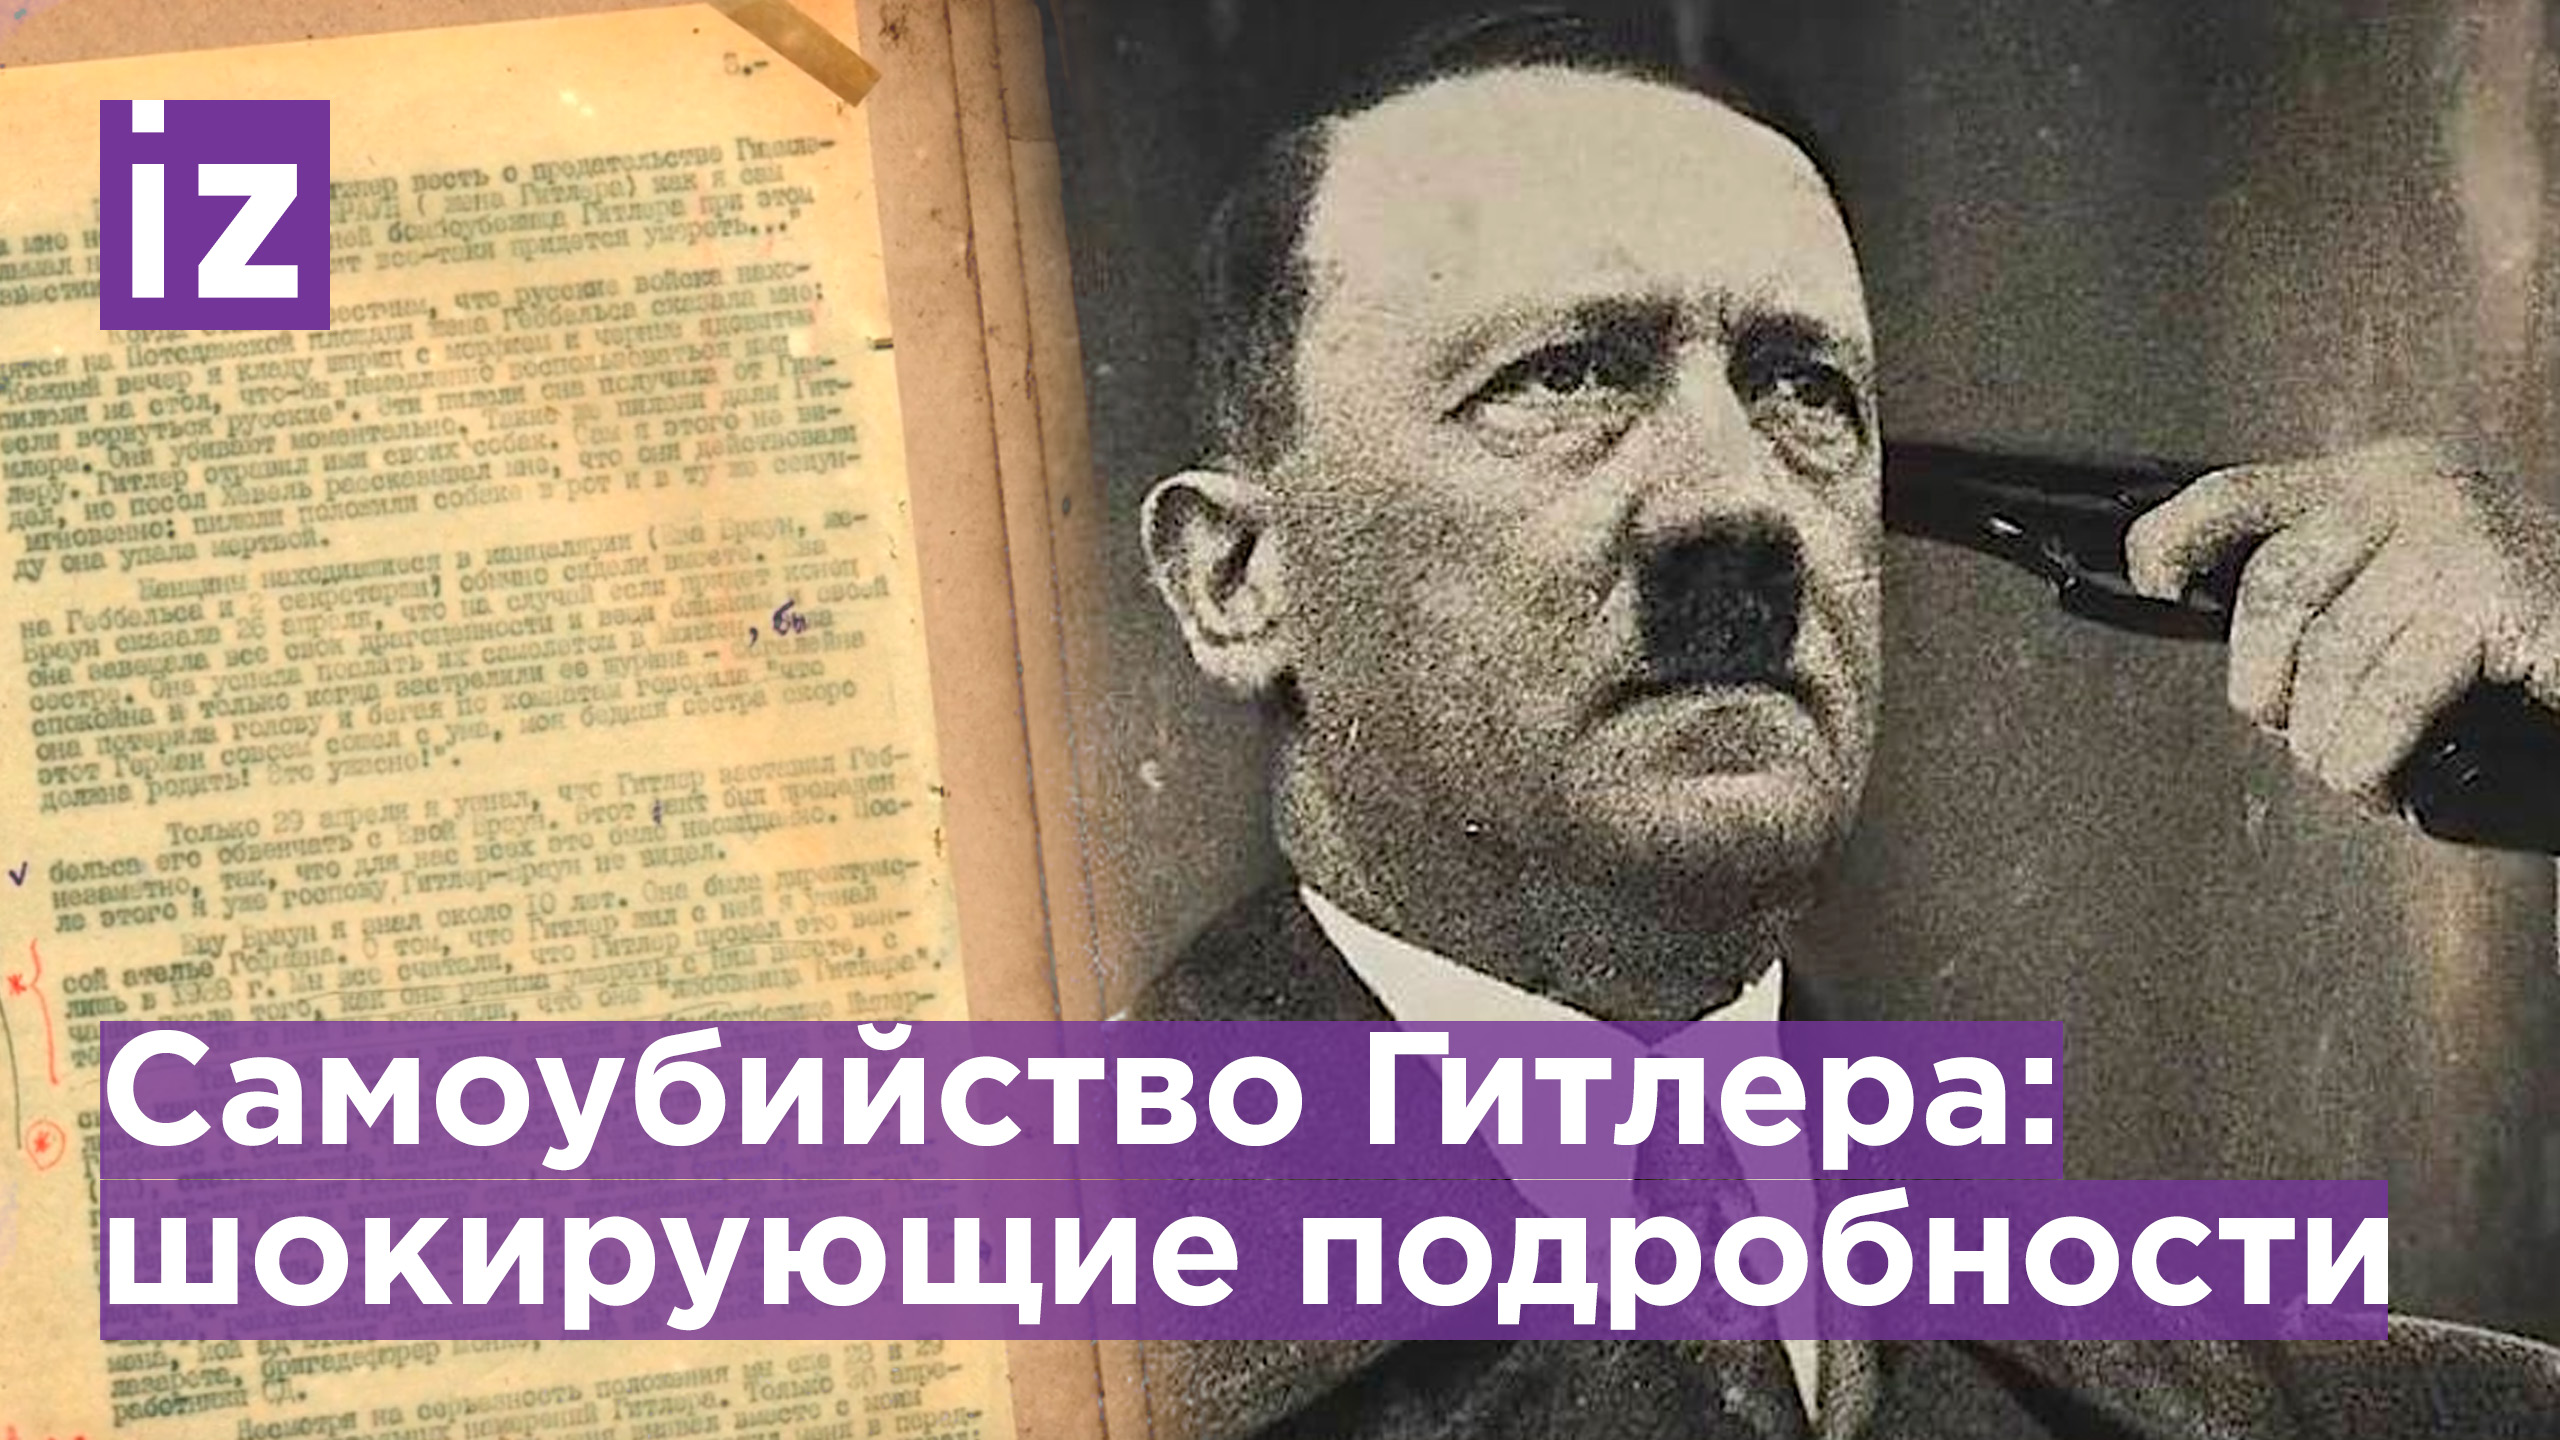 ФСБ обнародовала архивные документы о самоубийстве Гитлера / Известия